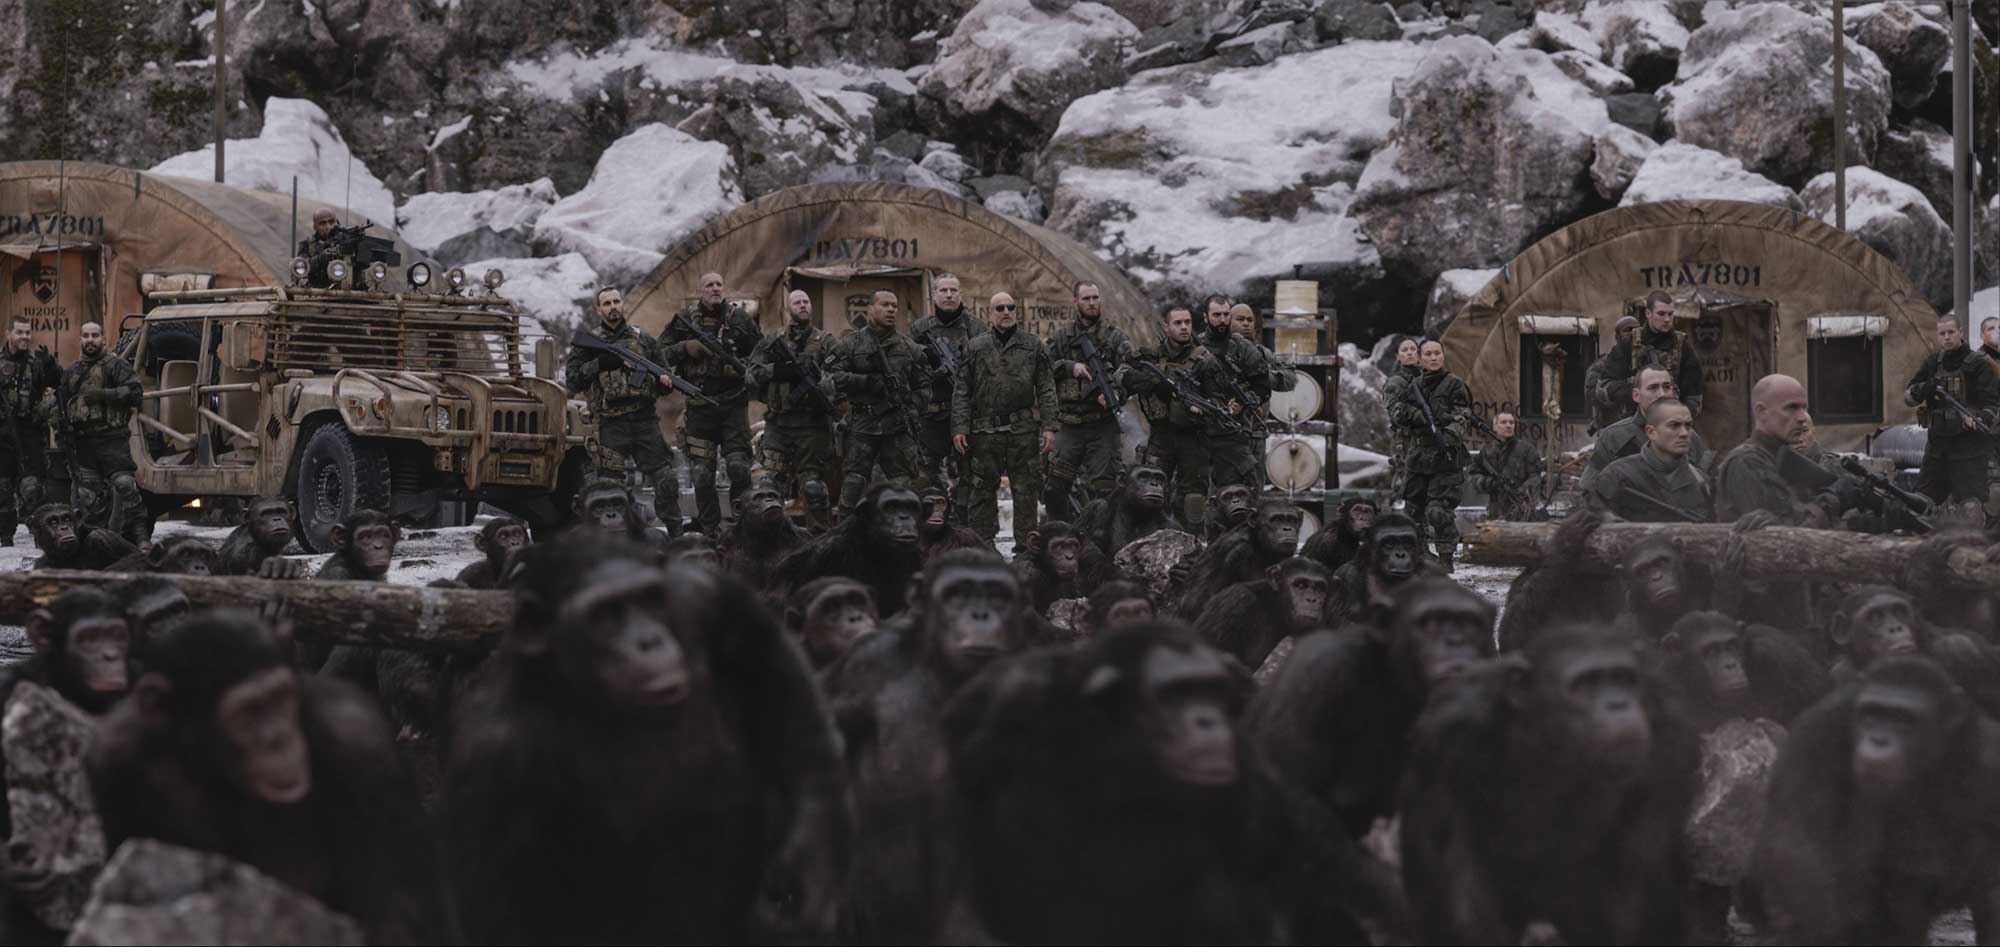 這是《猿人襲地球》（Planet of the Apes）電影系列的第二度重啟，許多觀眾都已經「理所當然」地無視 2001 年，Tim Burton 重啟的《猿人爭霸戰》（英文片名沒改），二度重啟版本以猿人的領袖凱撒故事作主軸，《猿人爭霸戰：猩凶巨戰》（War for the Planet of the Apes，以下簡稱《War》）可以視作「凱撒三部曲的最終章」，觀乎《War》的結尾，如果要銜接回 70 年代的 5 部《猿人襲地球》電影版（Planet of the Apes）的時空，中間應該可以再拍數集，因為《War》已經出現了 Nova 和 Cornelius 兩個在舊版有的重要角色。